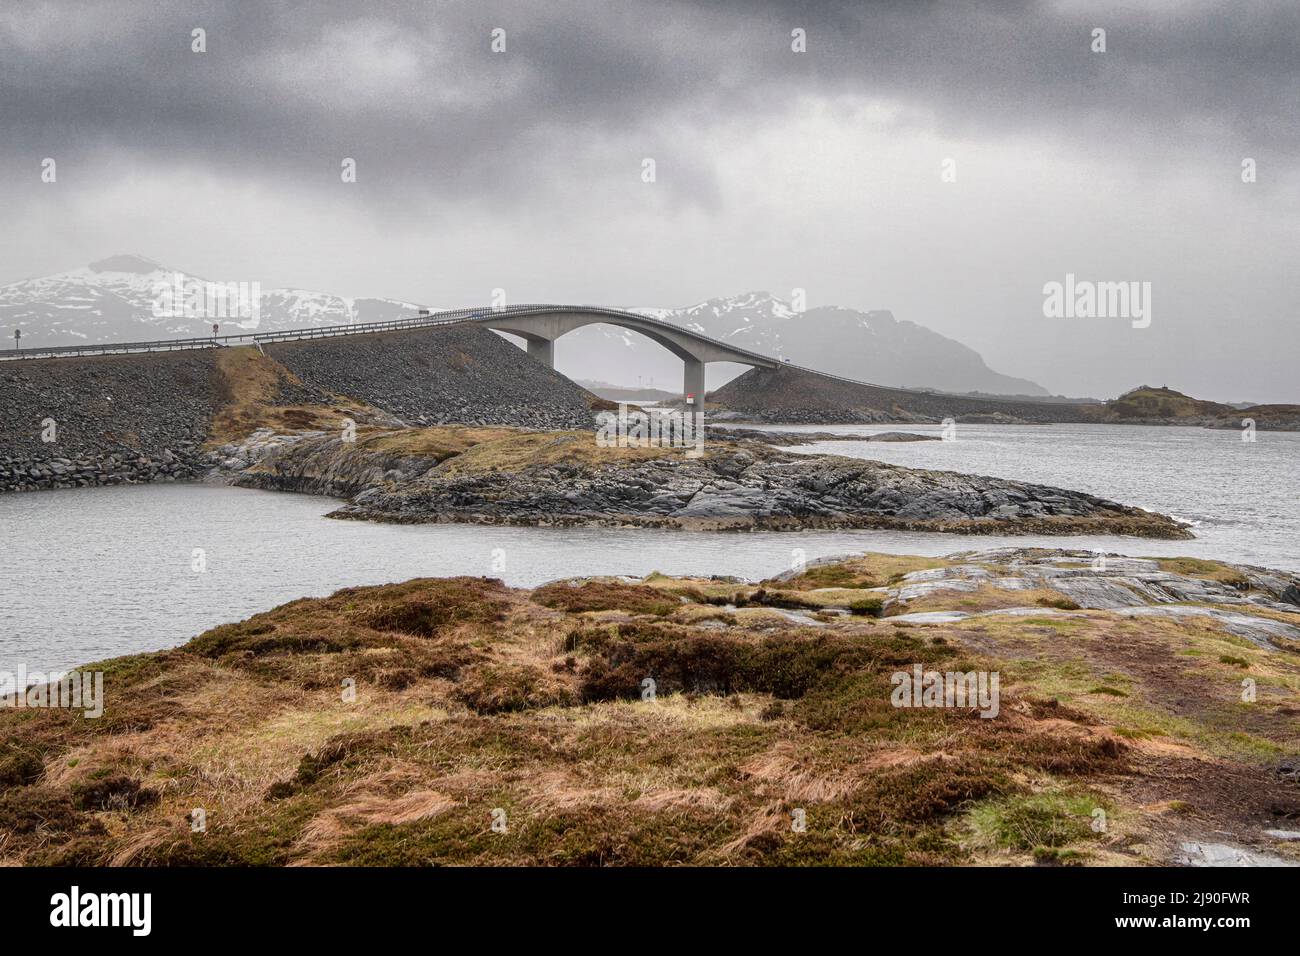 Le pont Storsisundet, situé dans la partie midwest de la côte norvégienne, le pont en porte-à-faux fait partie du chemin de l'Atlantique norvégien Banque D'Images